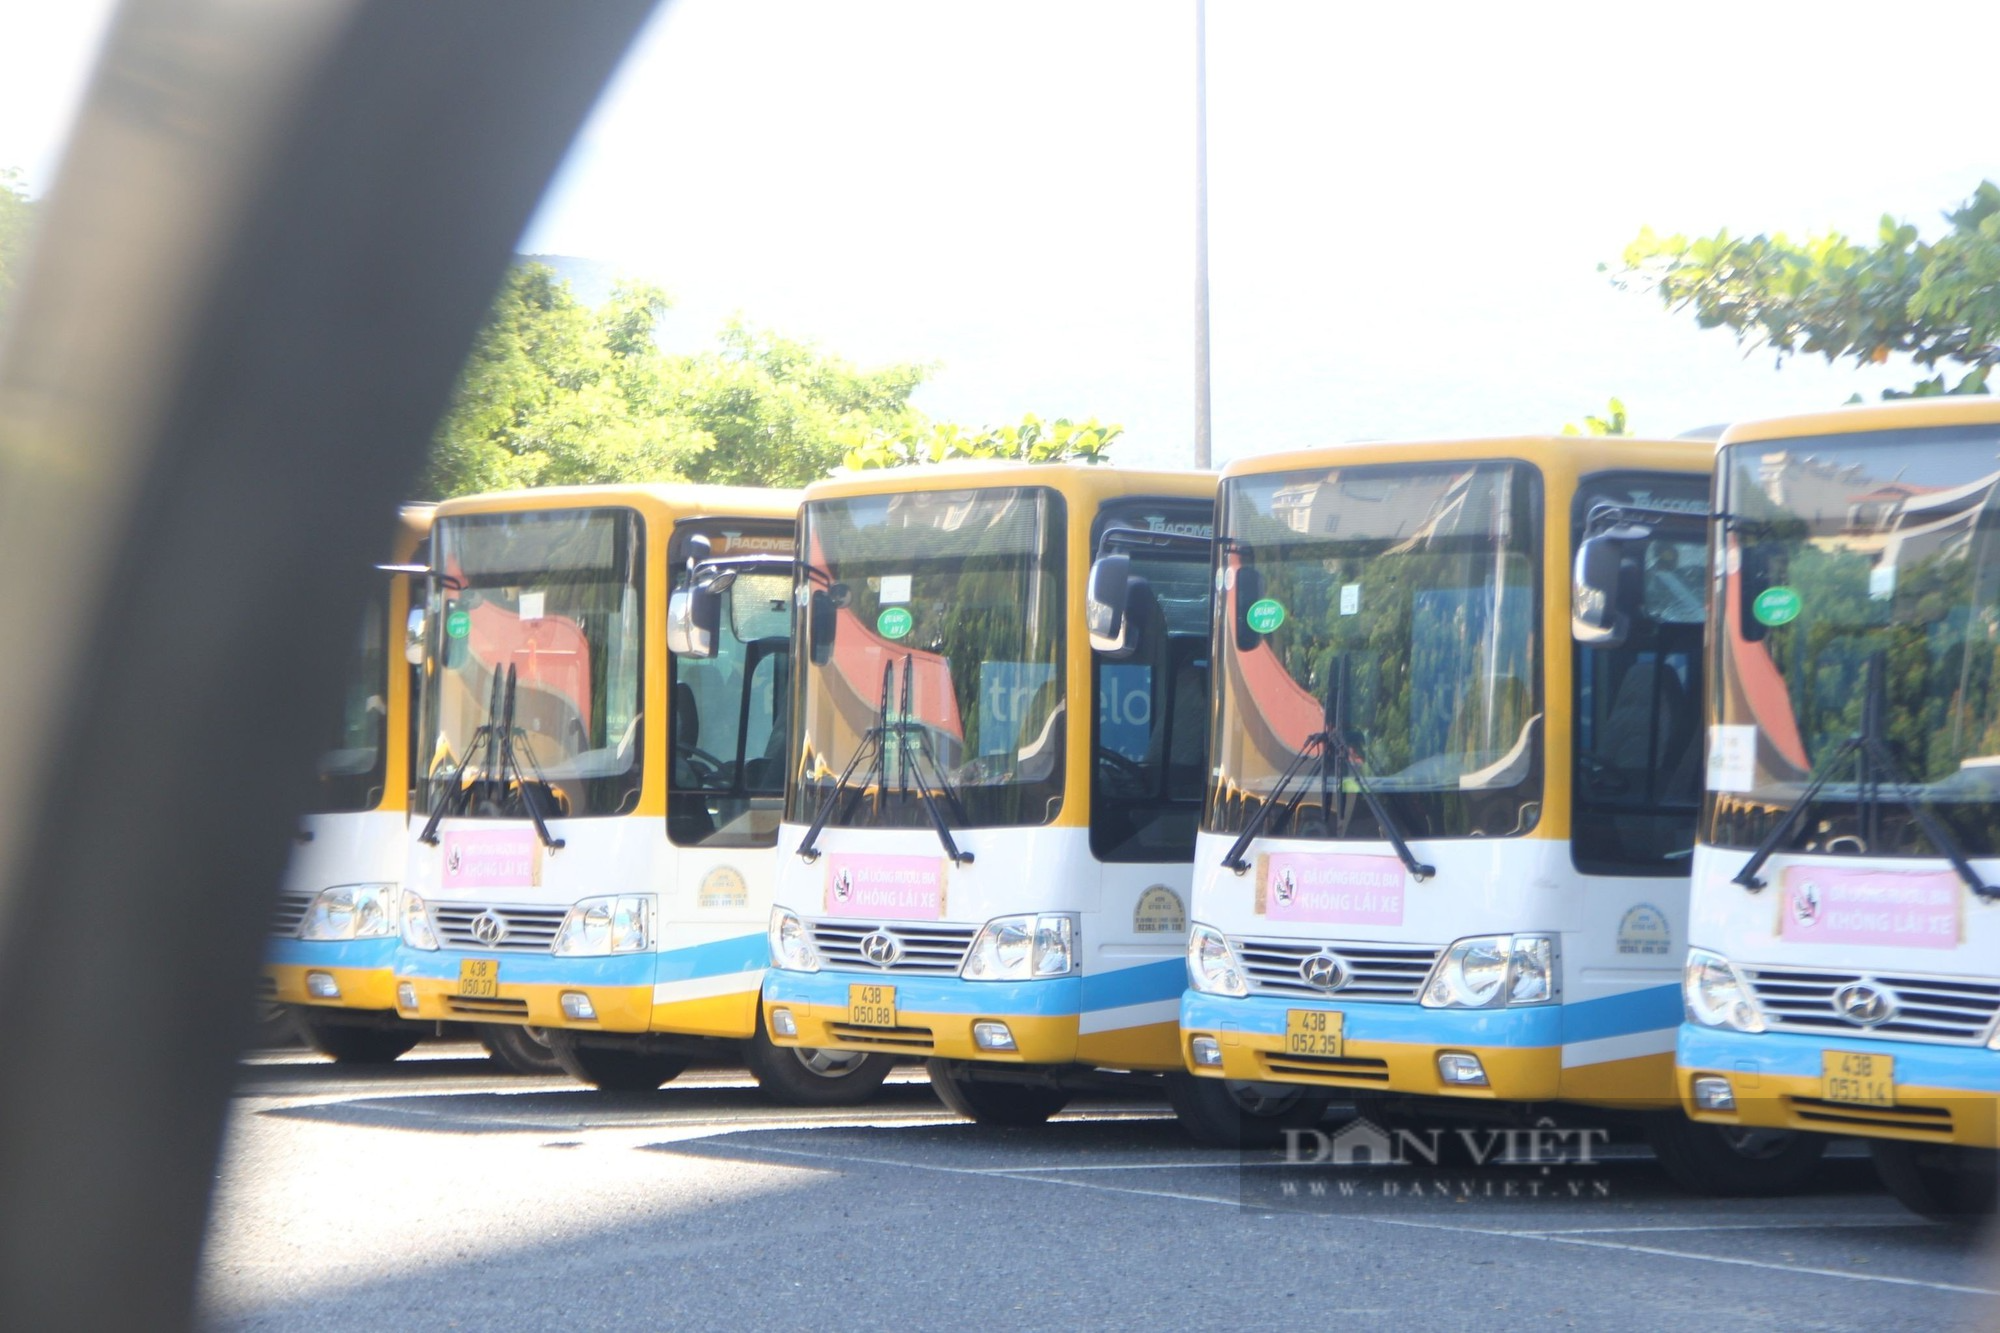 Đà Nẵng: Hơn 100 tài xế, nhân viên bán vé xe buýt tiếp tục lãn công, đòi lương - Ảnh 2.